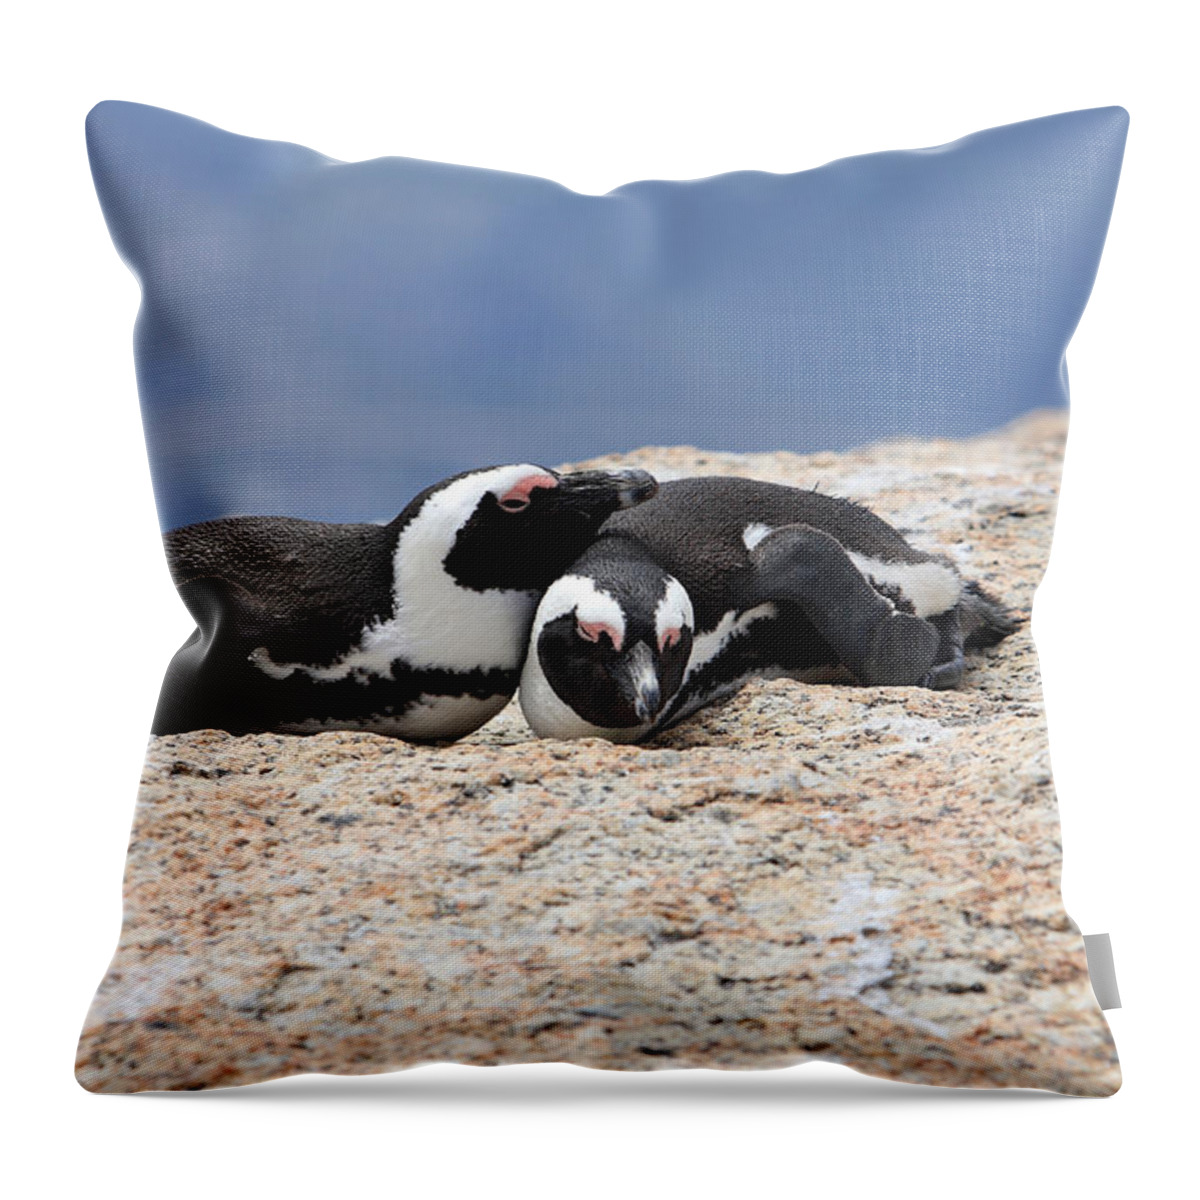 Penguin Throw Pillow featuring the photograph Close Bonds, African Penguin by Aidan Moran